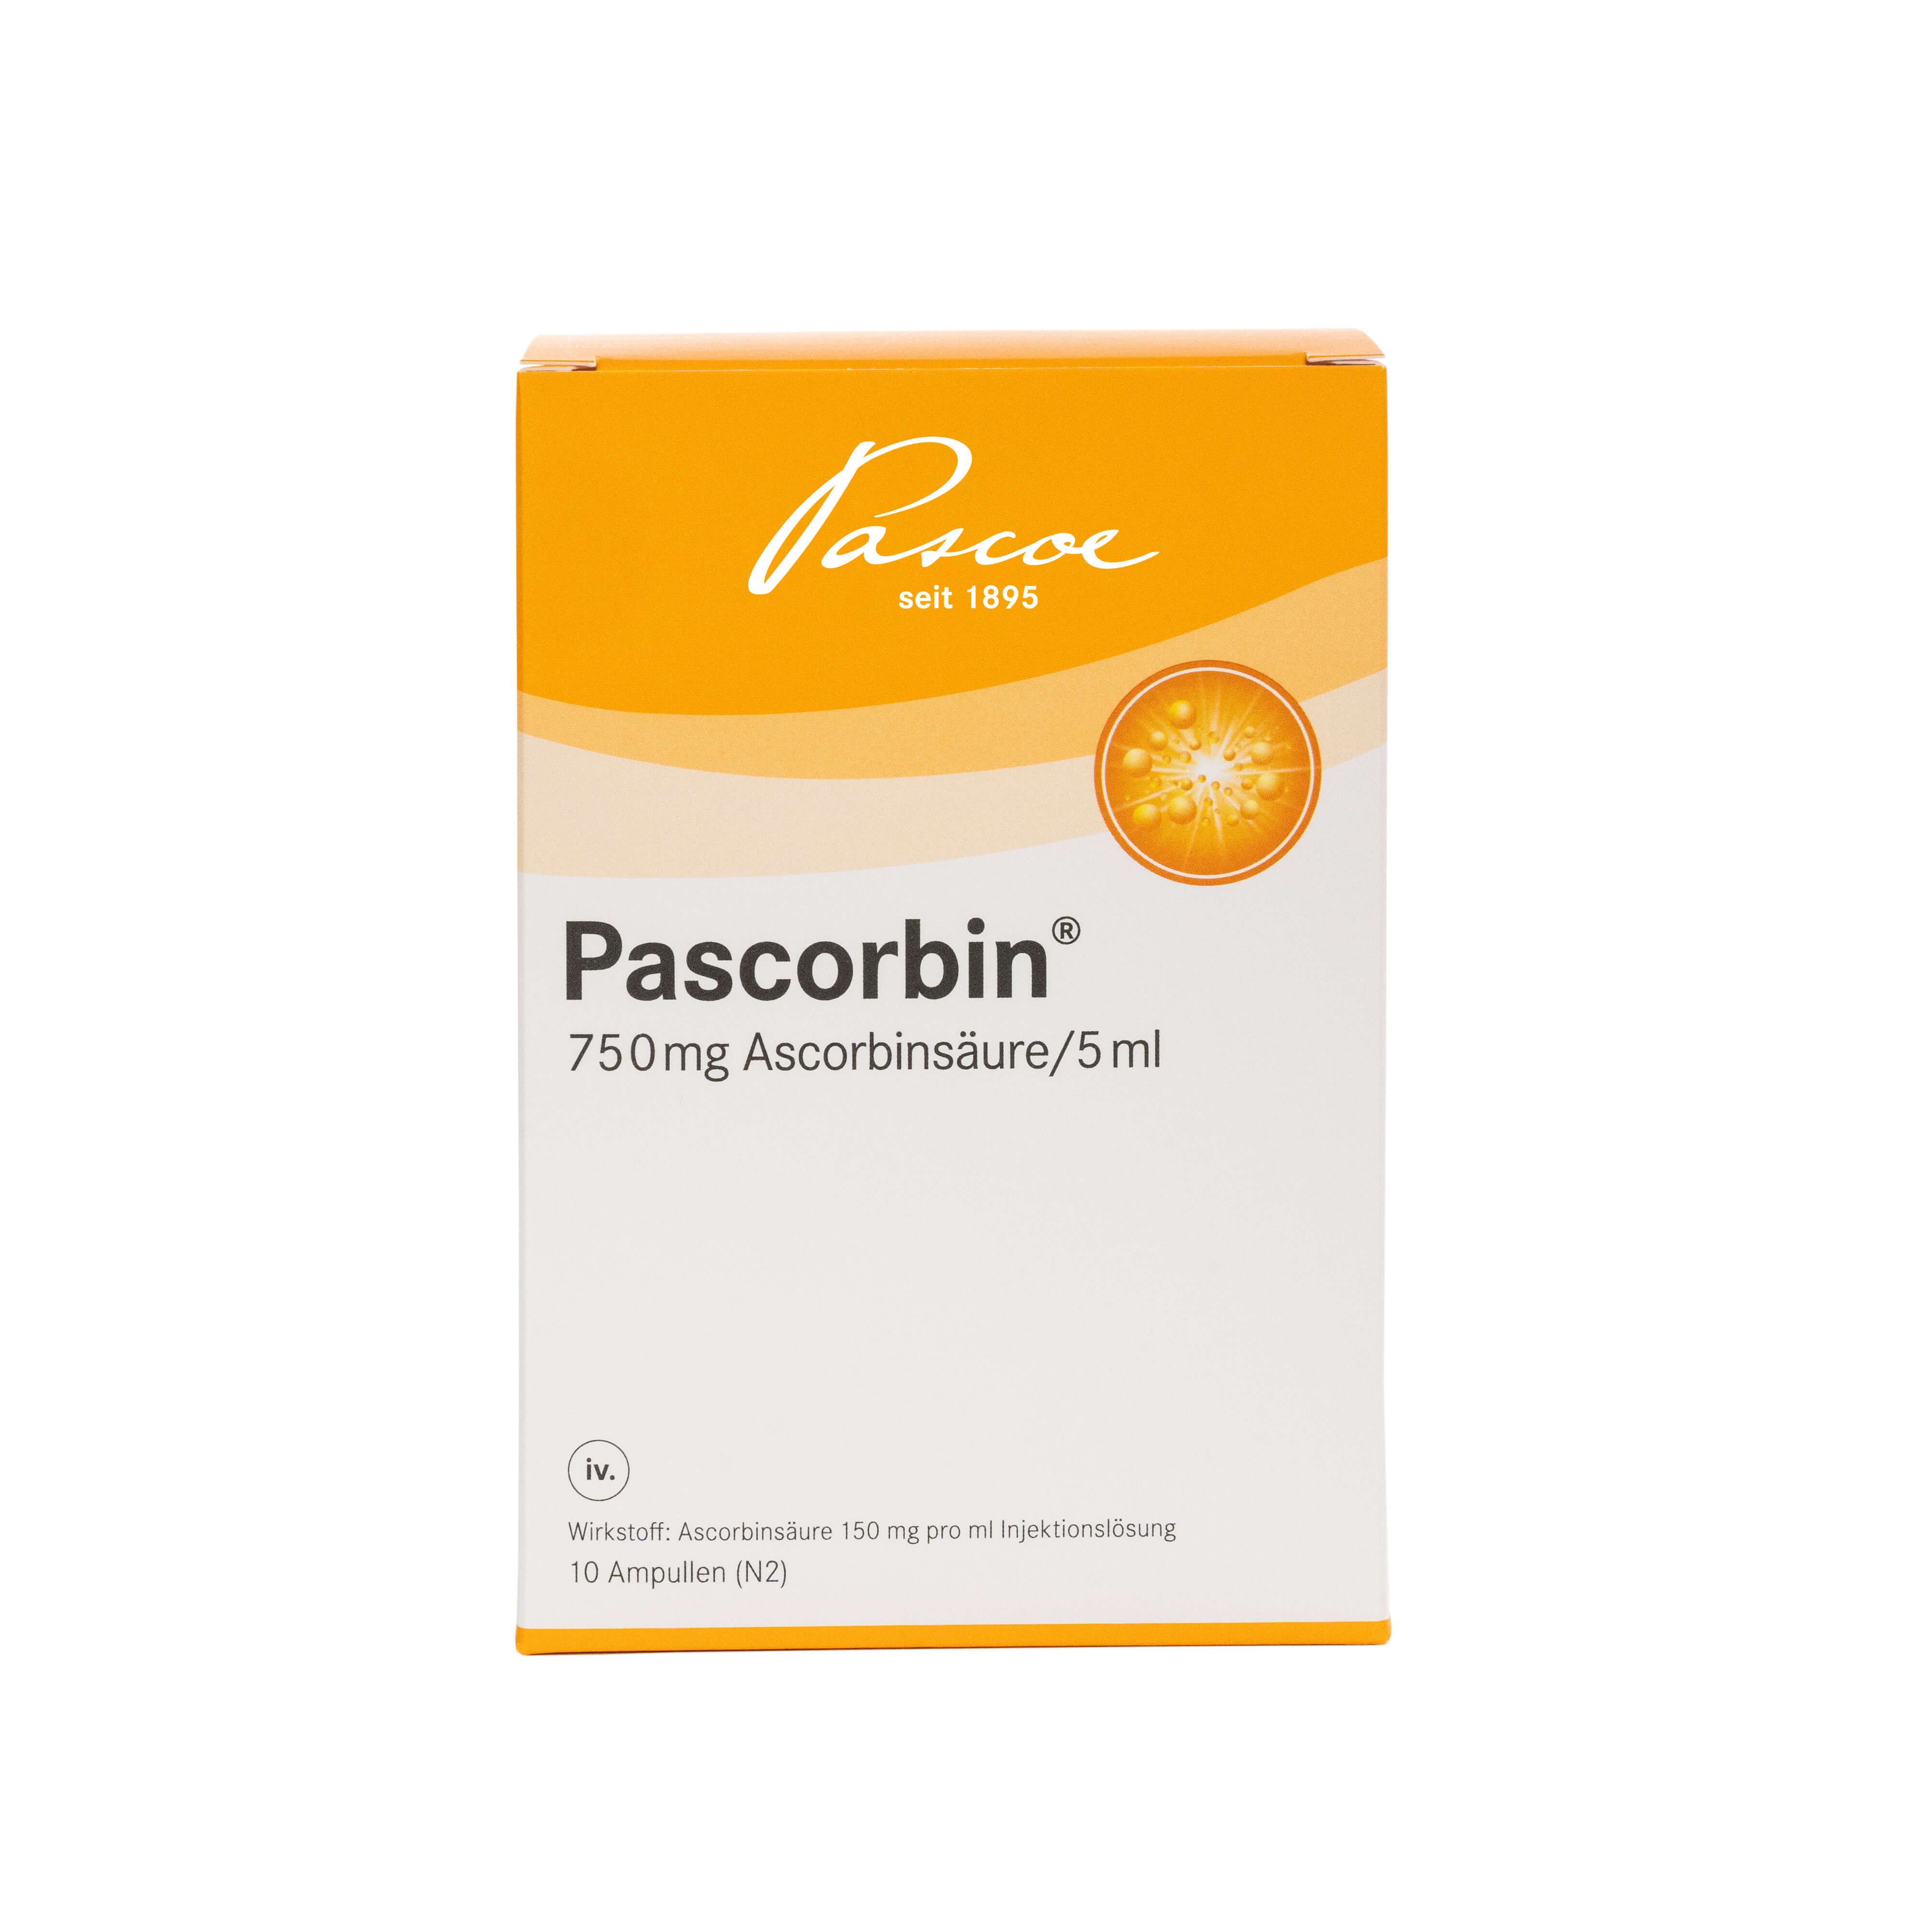 pascorbin-ampullen-packung-00150343.jpg